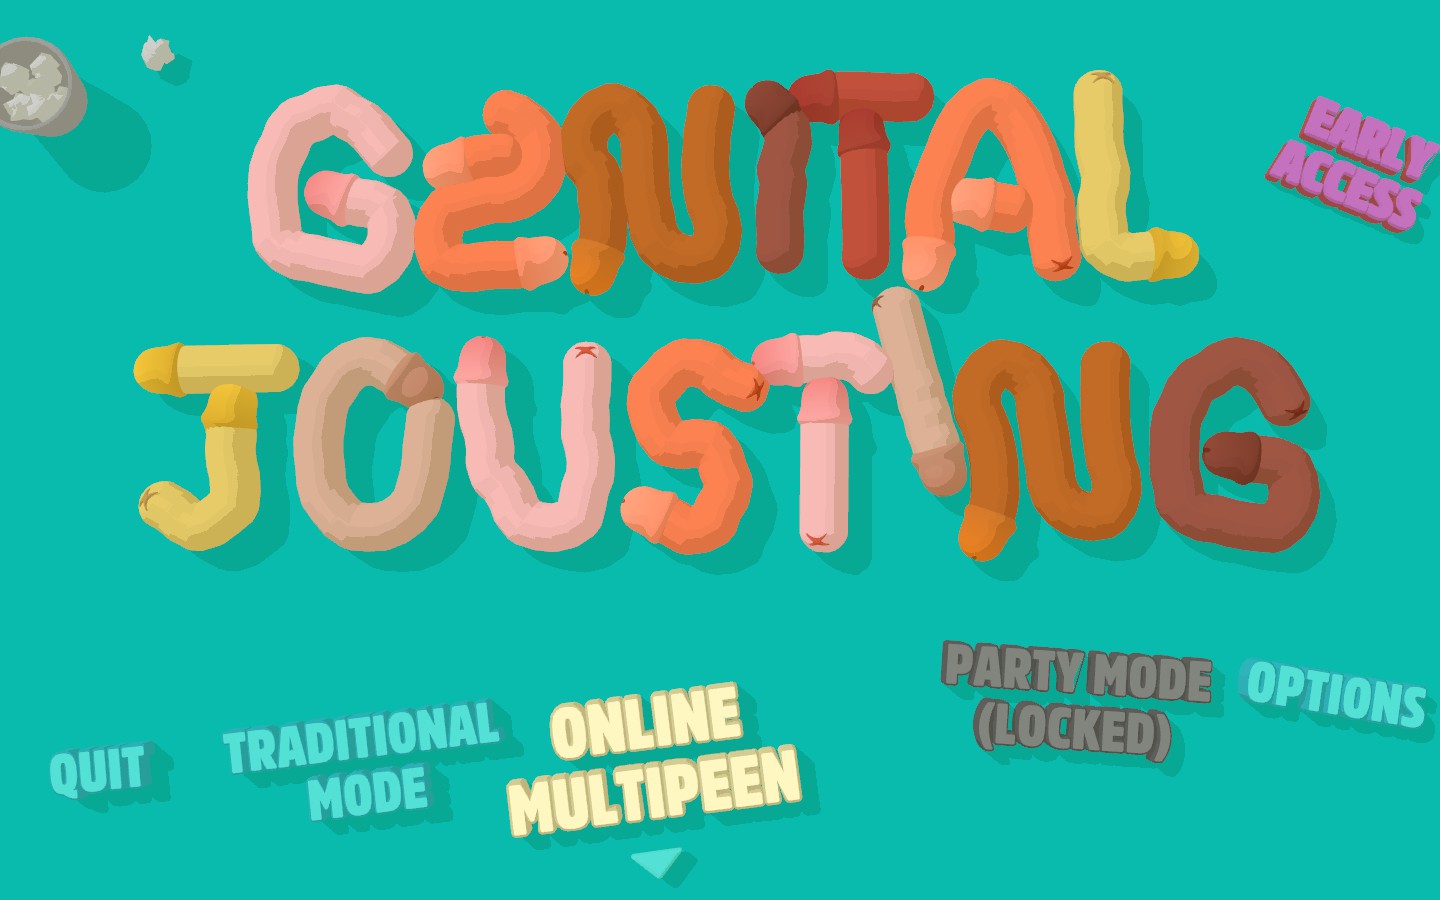 genital jousting windowed mode